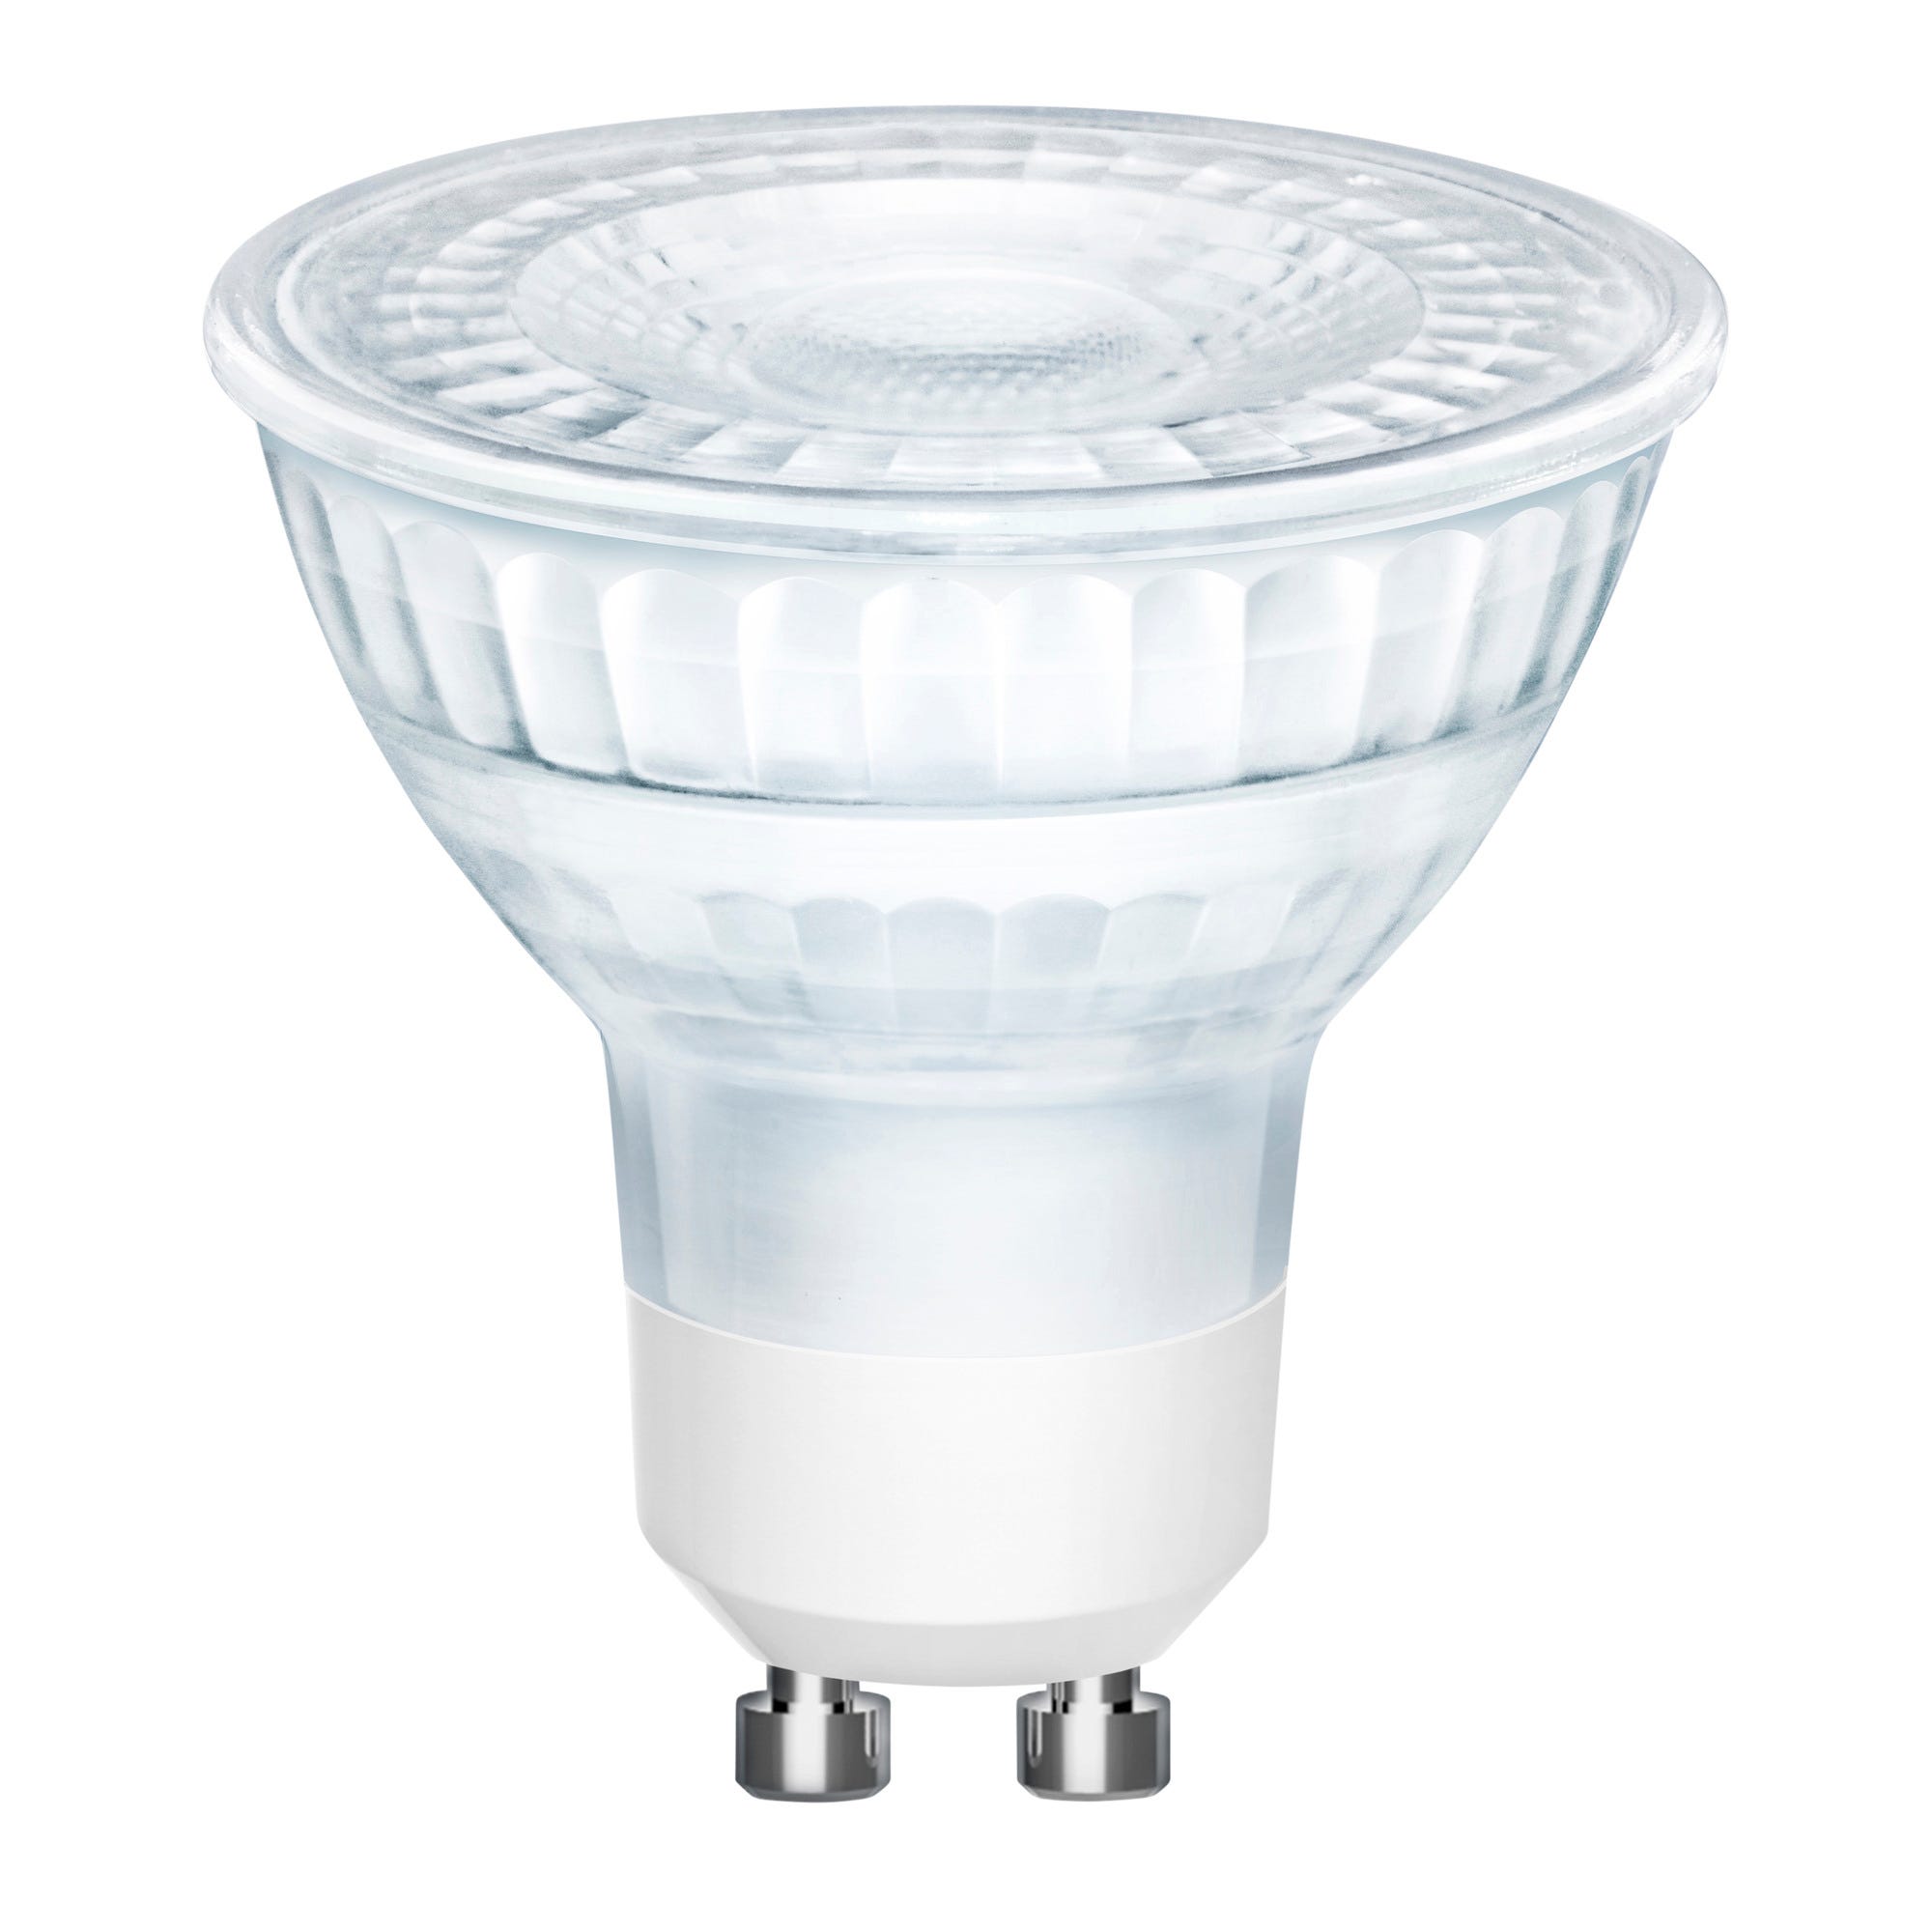 Ampoule LED GU10 blanc chaud - NORDLUX 0